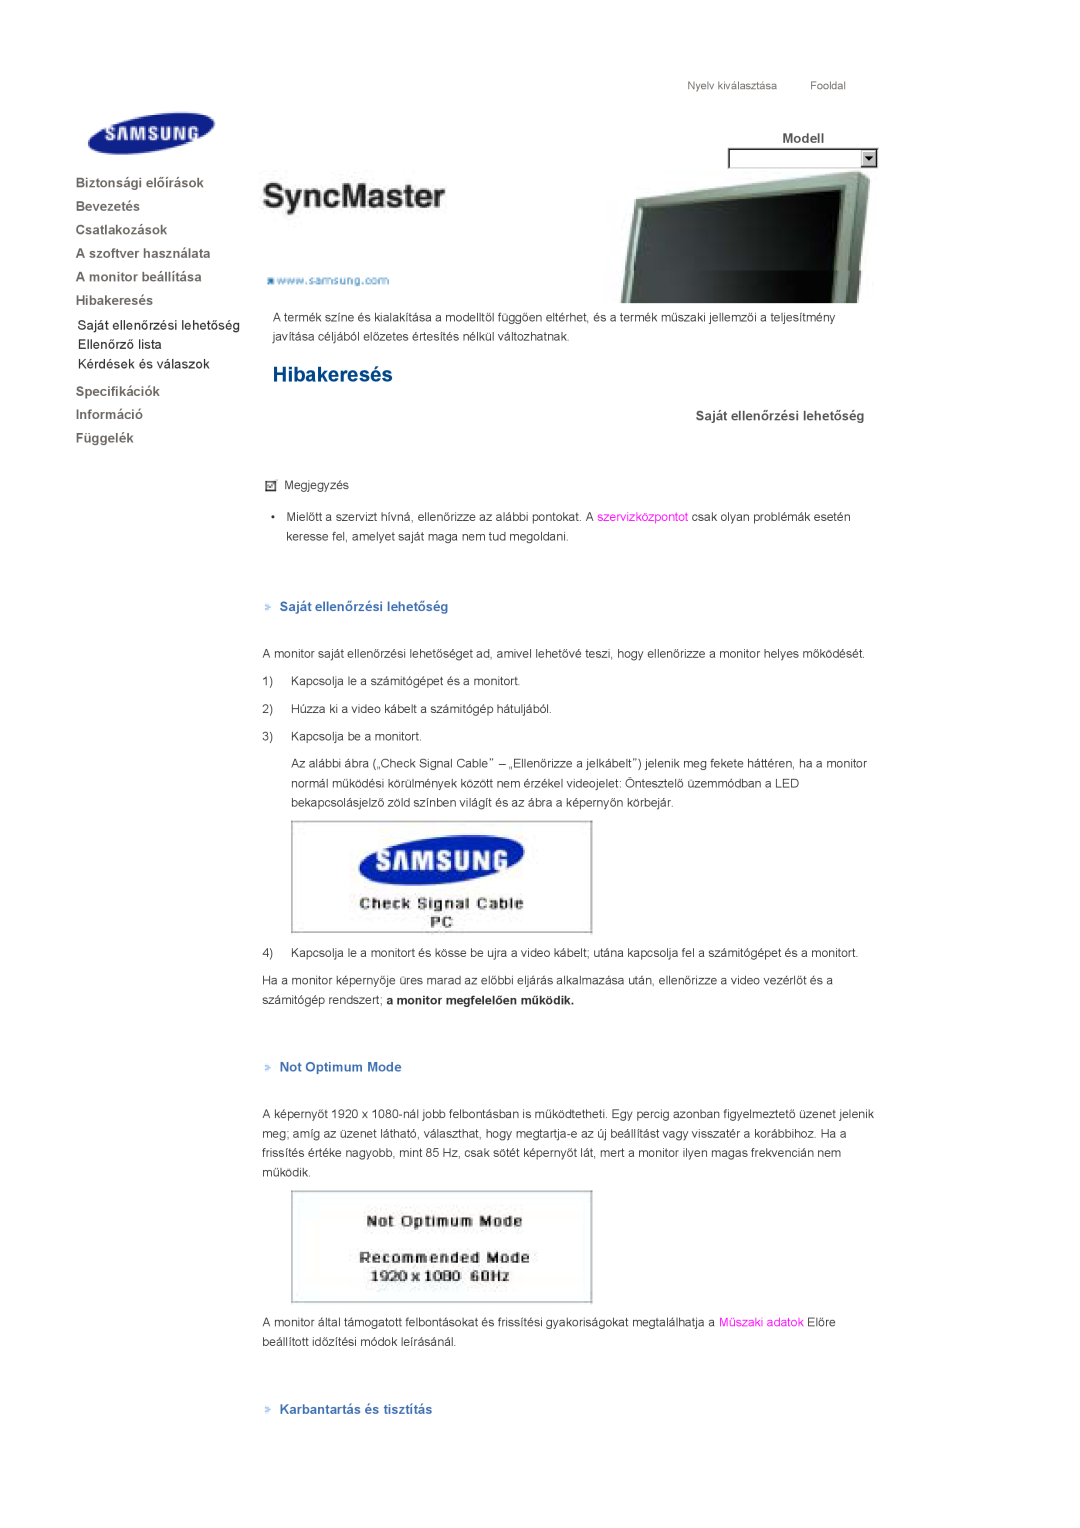 Samsung LS70BPTNS/EDC Hibakeresés, Saját ellenőrzési lehetőség Ellenőrző lista Kérdések és válaszok, Not Optimum Mode 